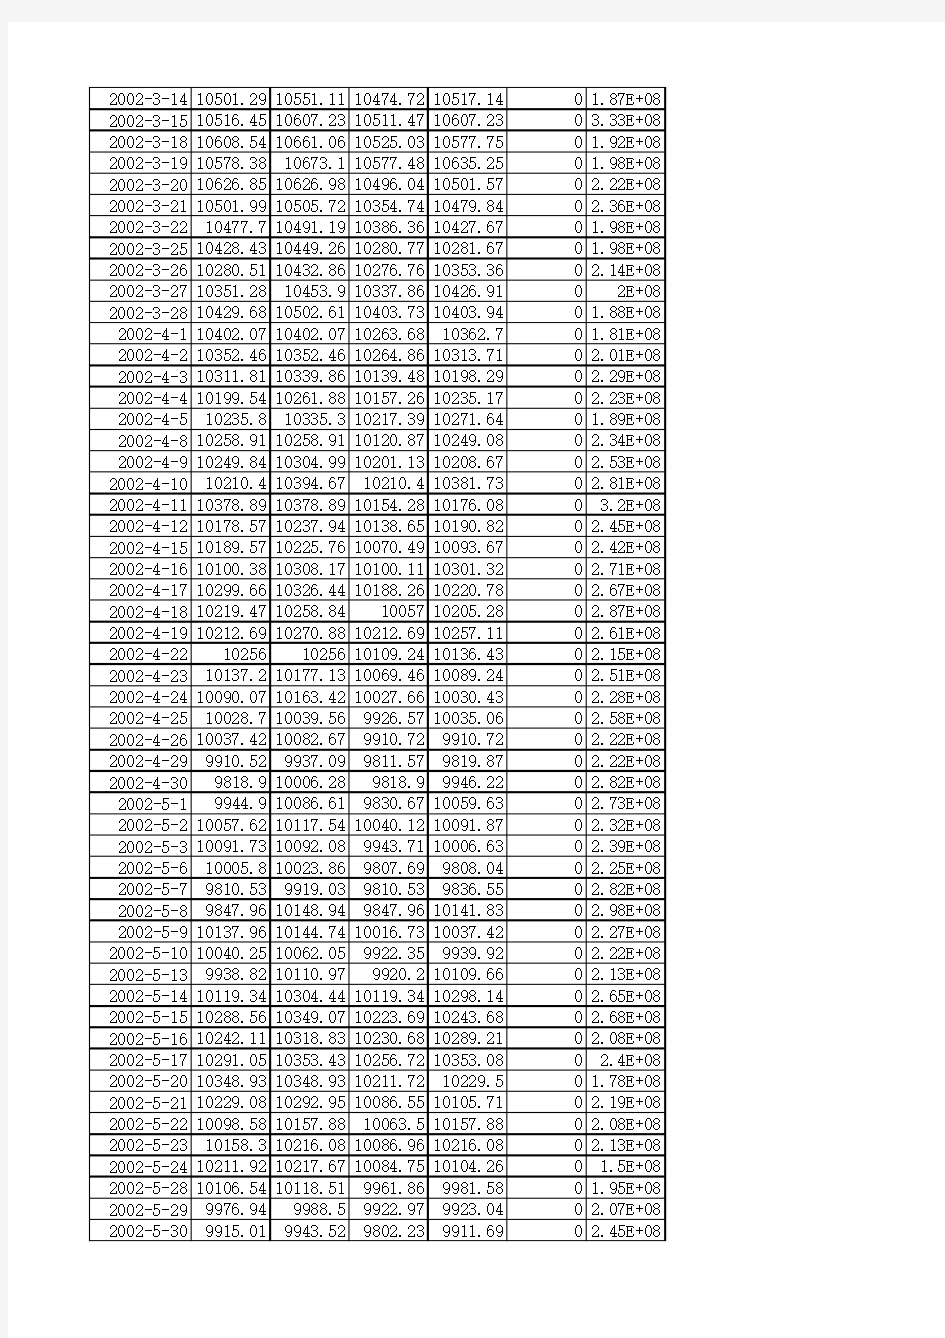 道琼斯指数2001-12-26至2015-1-16(已校对)